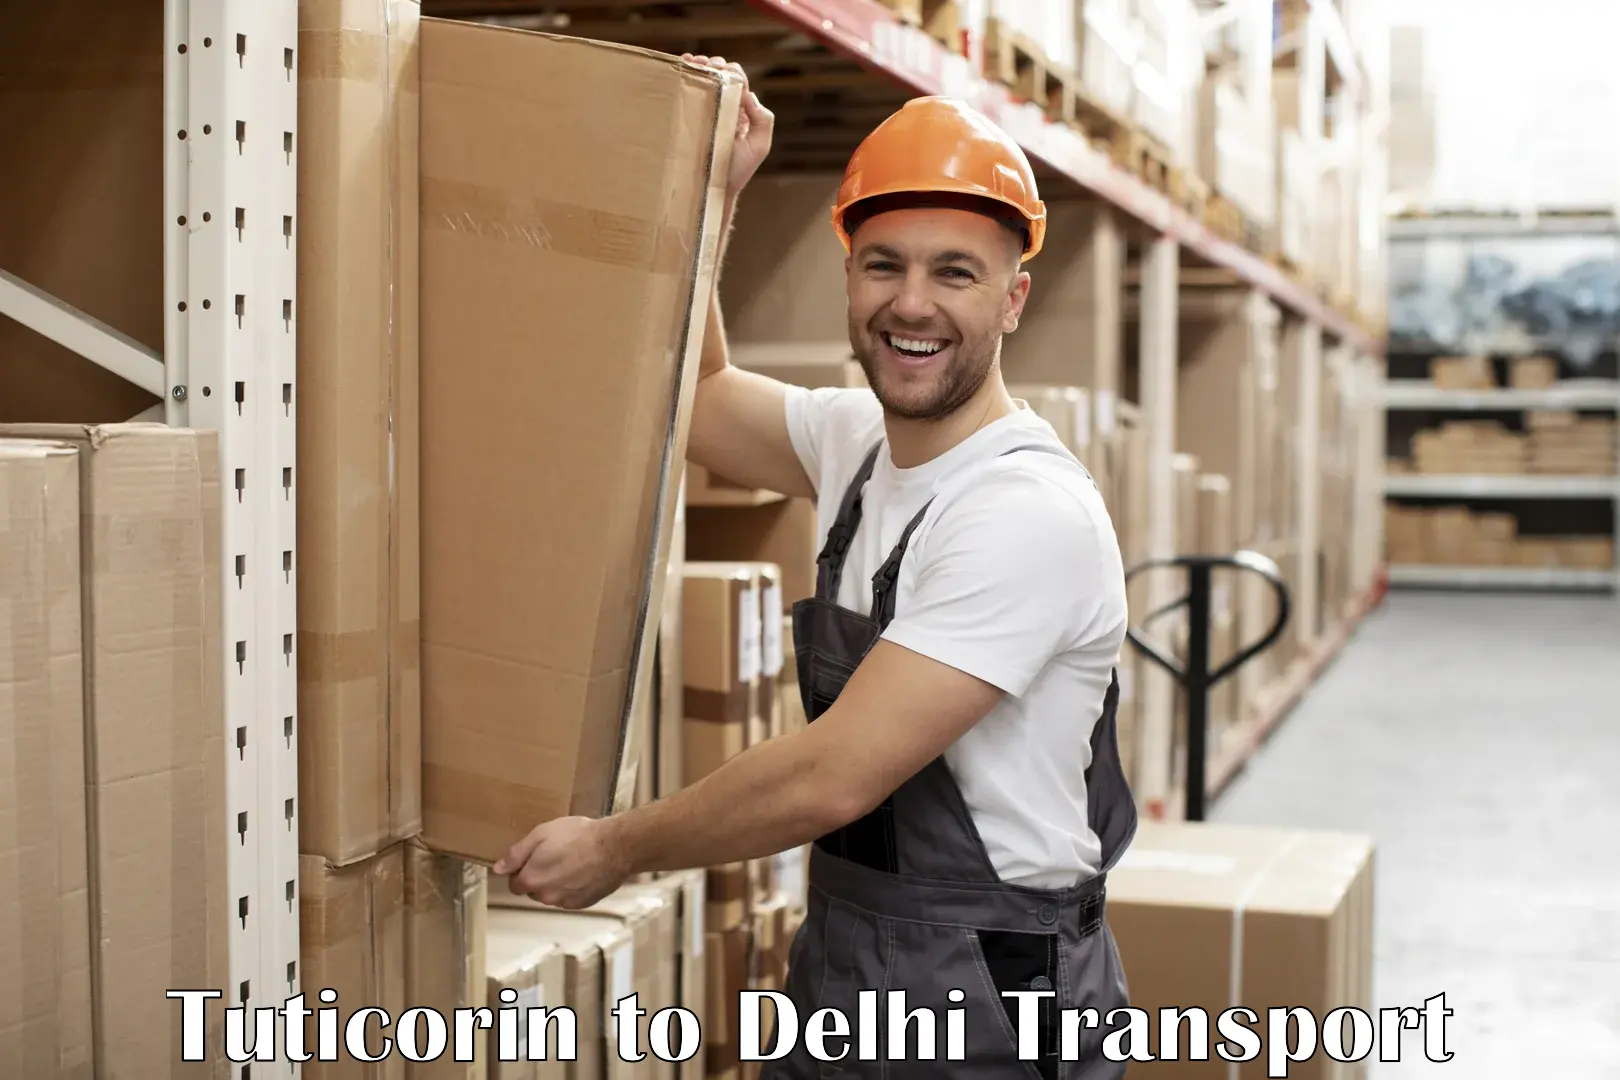 Shipping partner Tuticorin to NIT Delhi